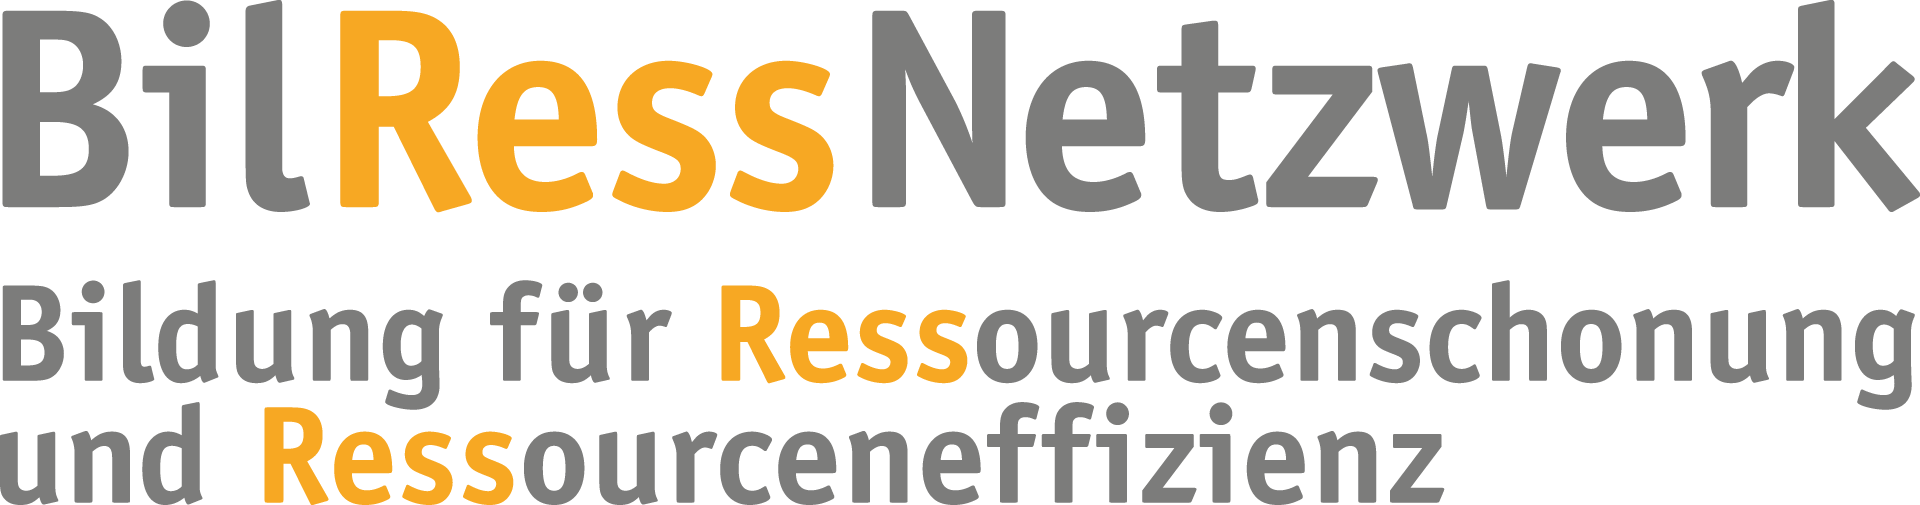 logo-bilress-netzwerk